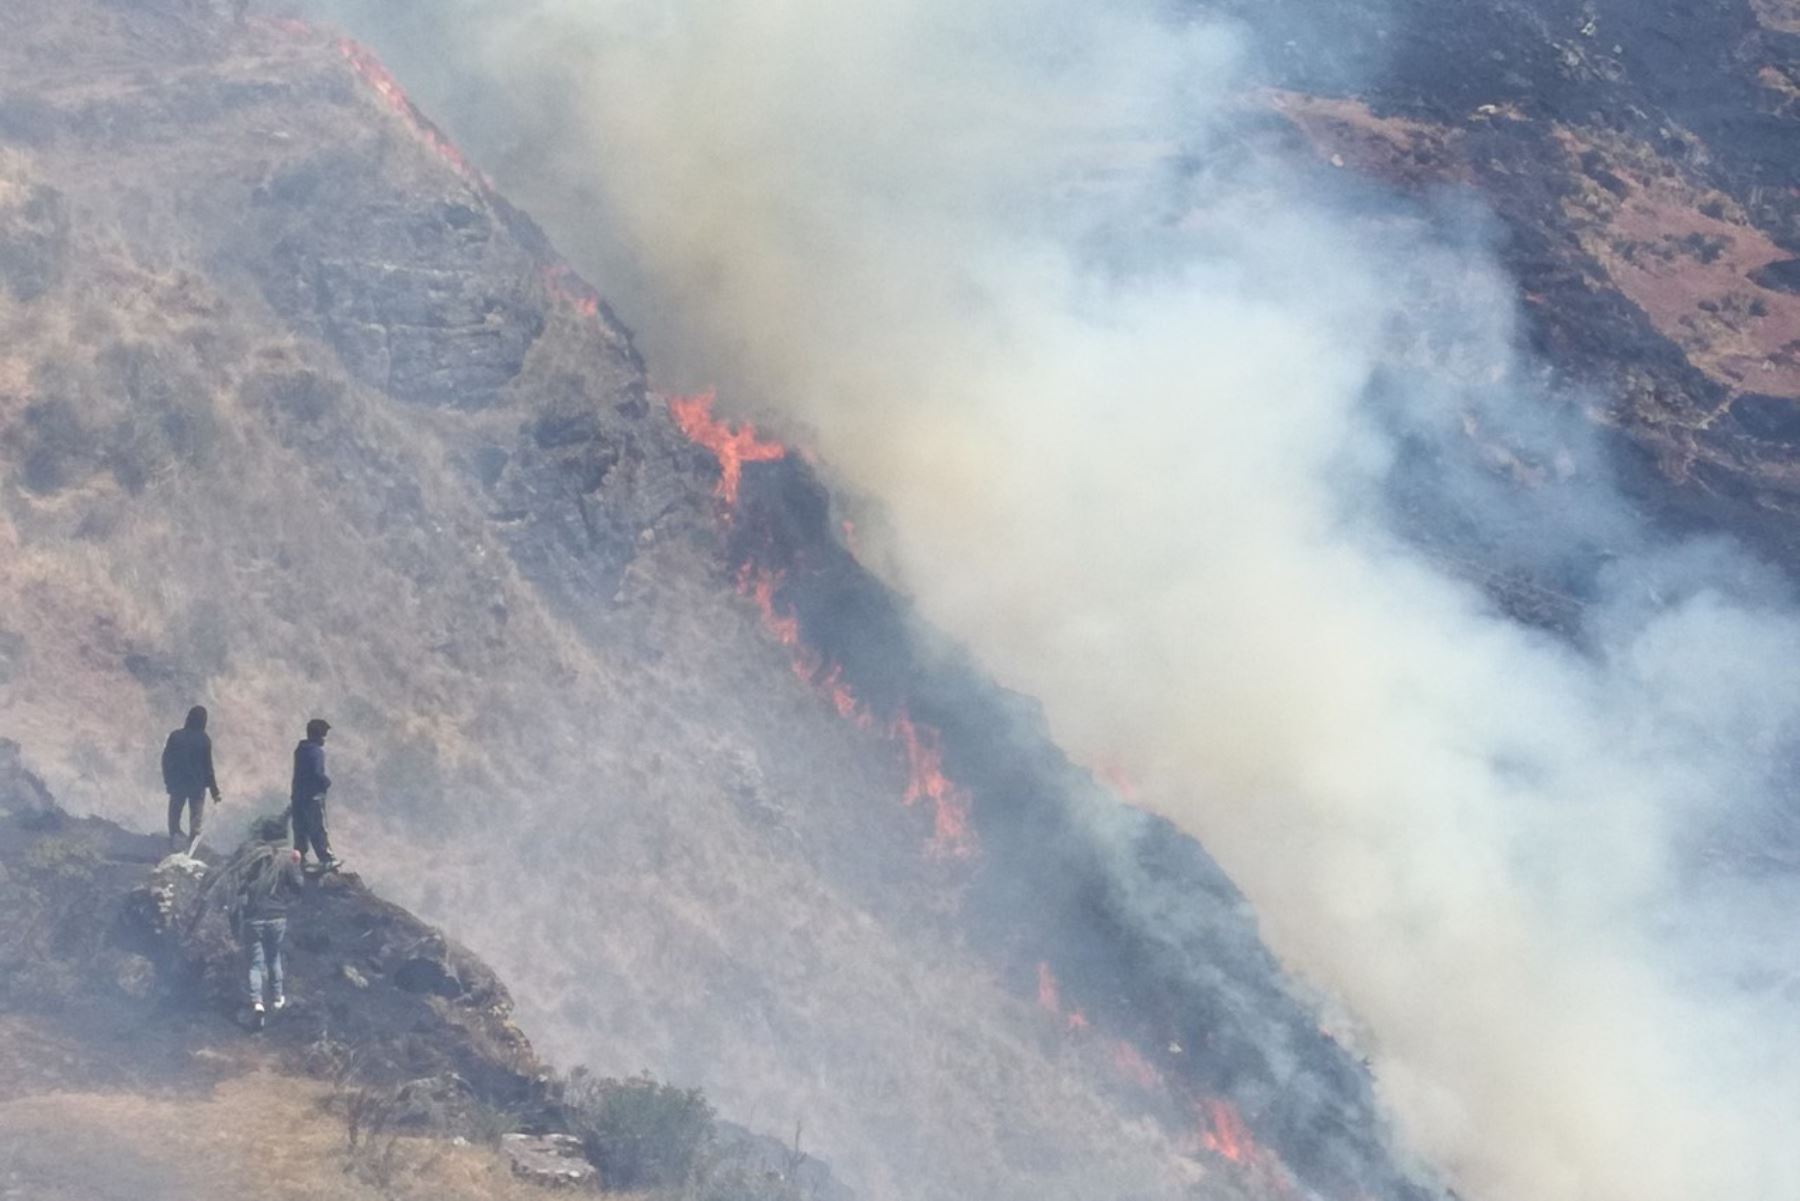 El alcalde de Chacayán, Over Vega Prado, informó que un incendio en el cerro Jogorón ha afectado áreas de cultivo.